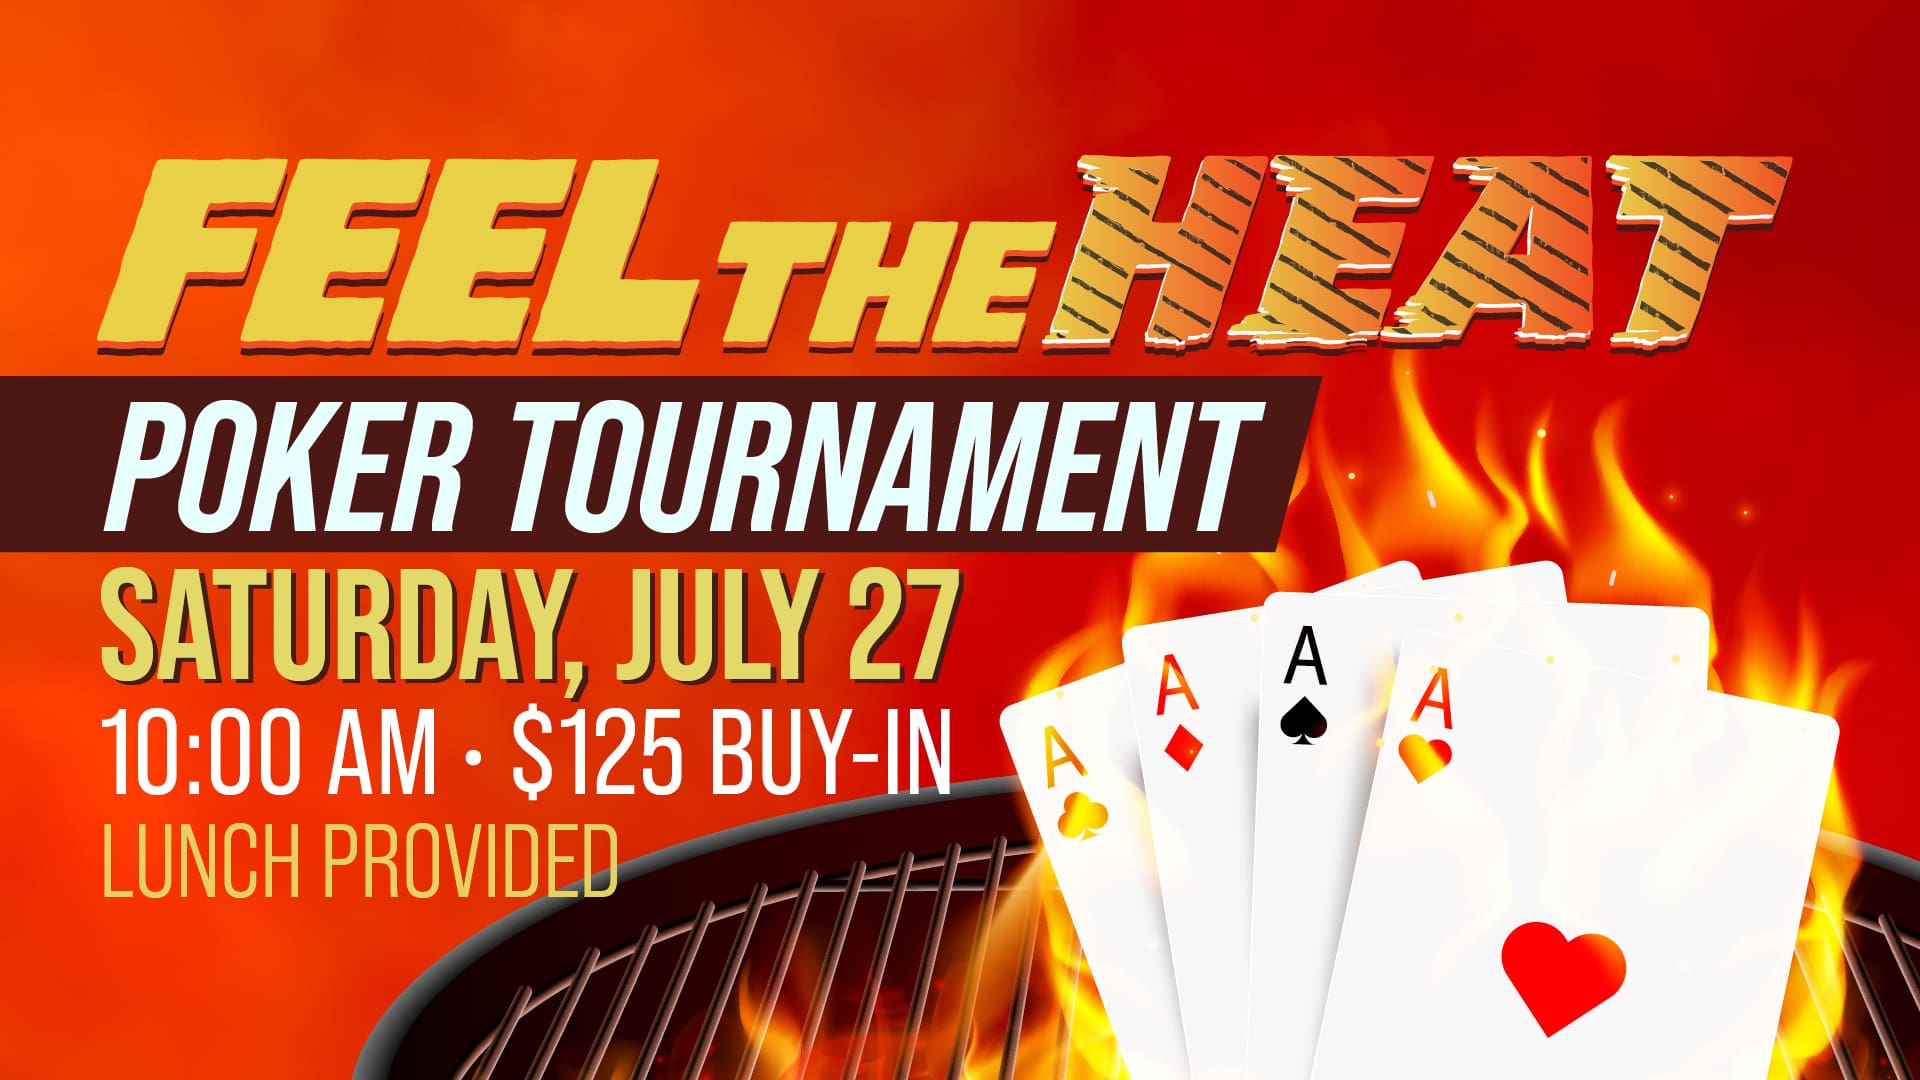 July_Feel_The_Heat_Poker_Tournament_Landscape_1920x1080